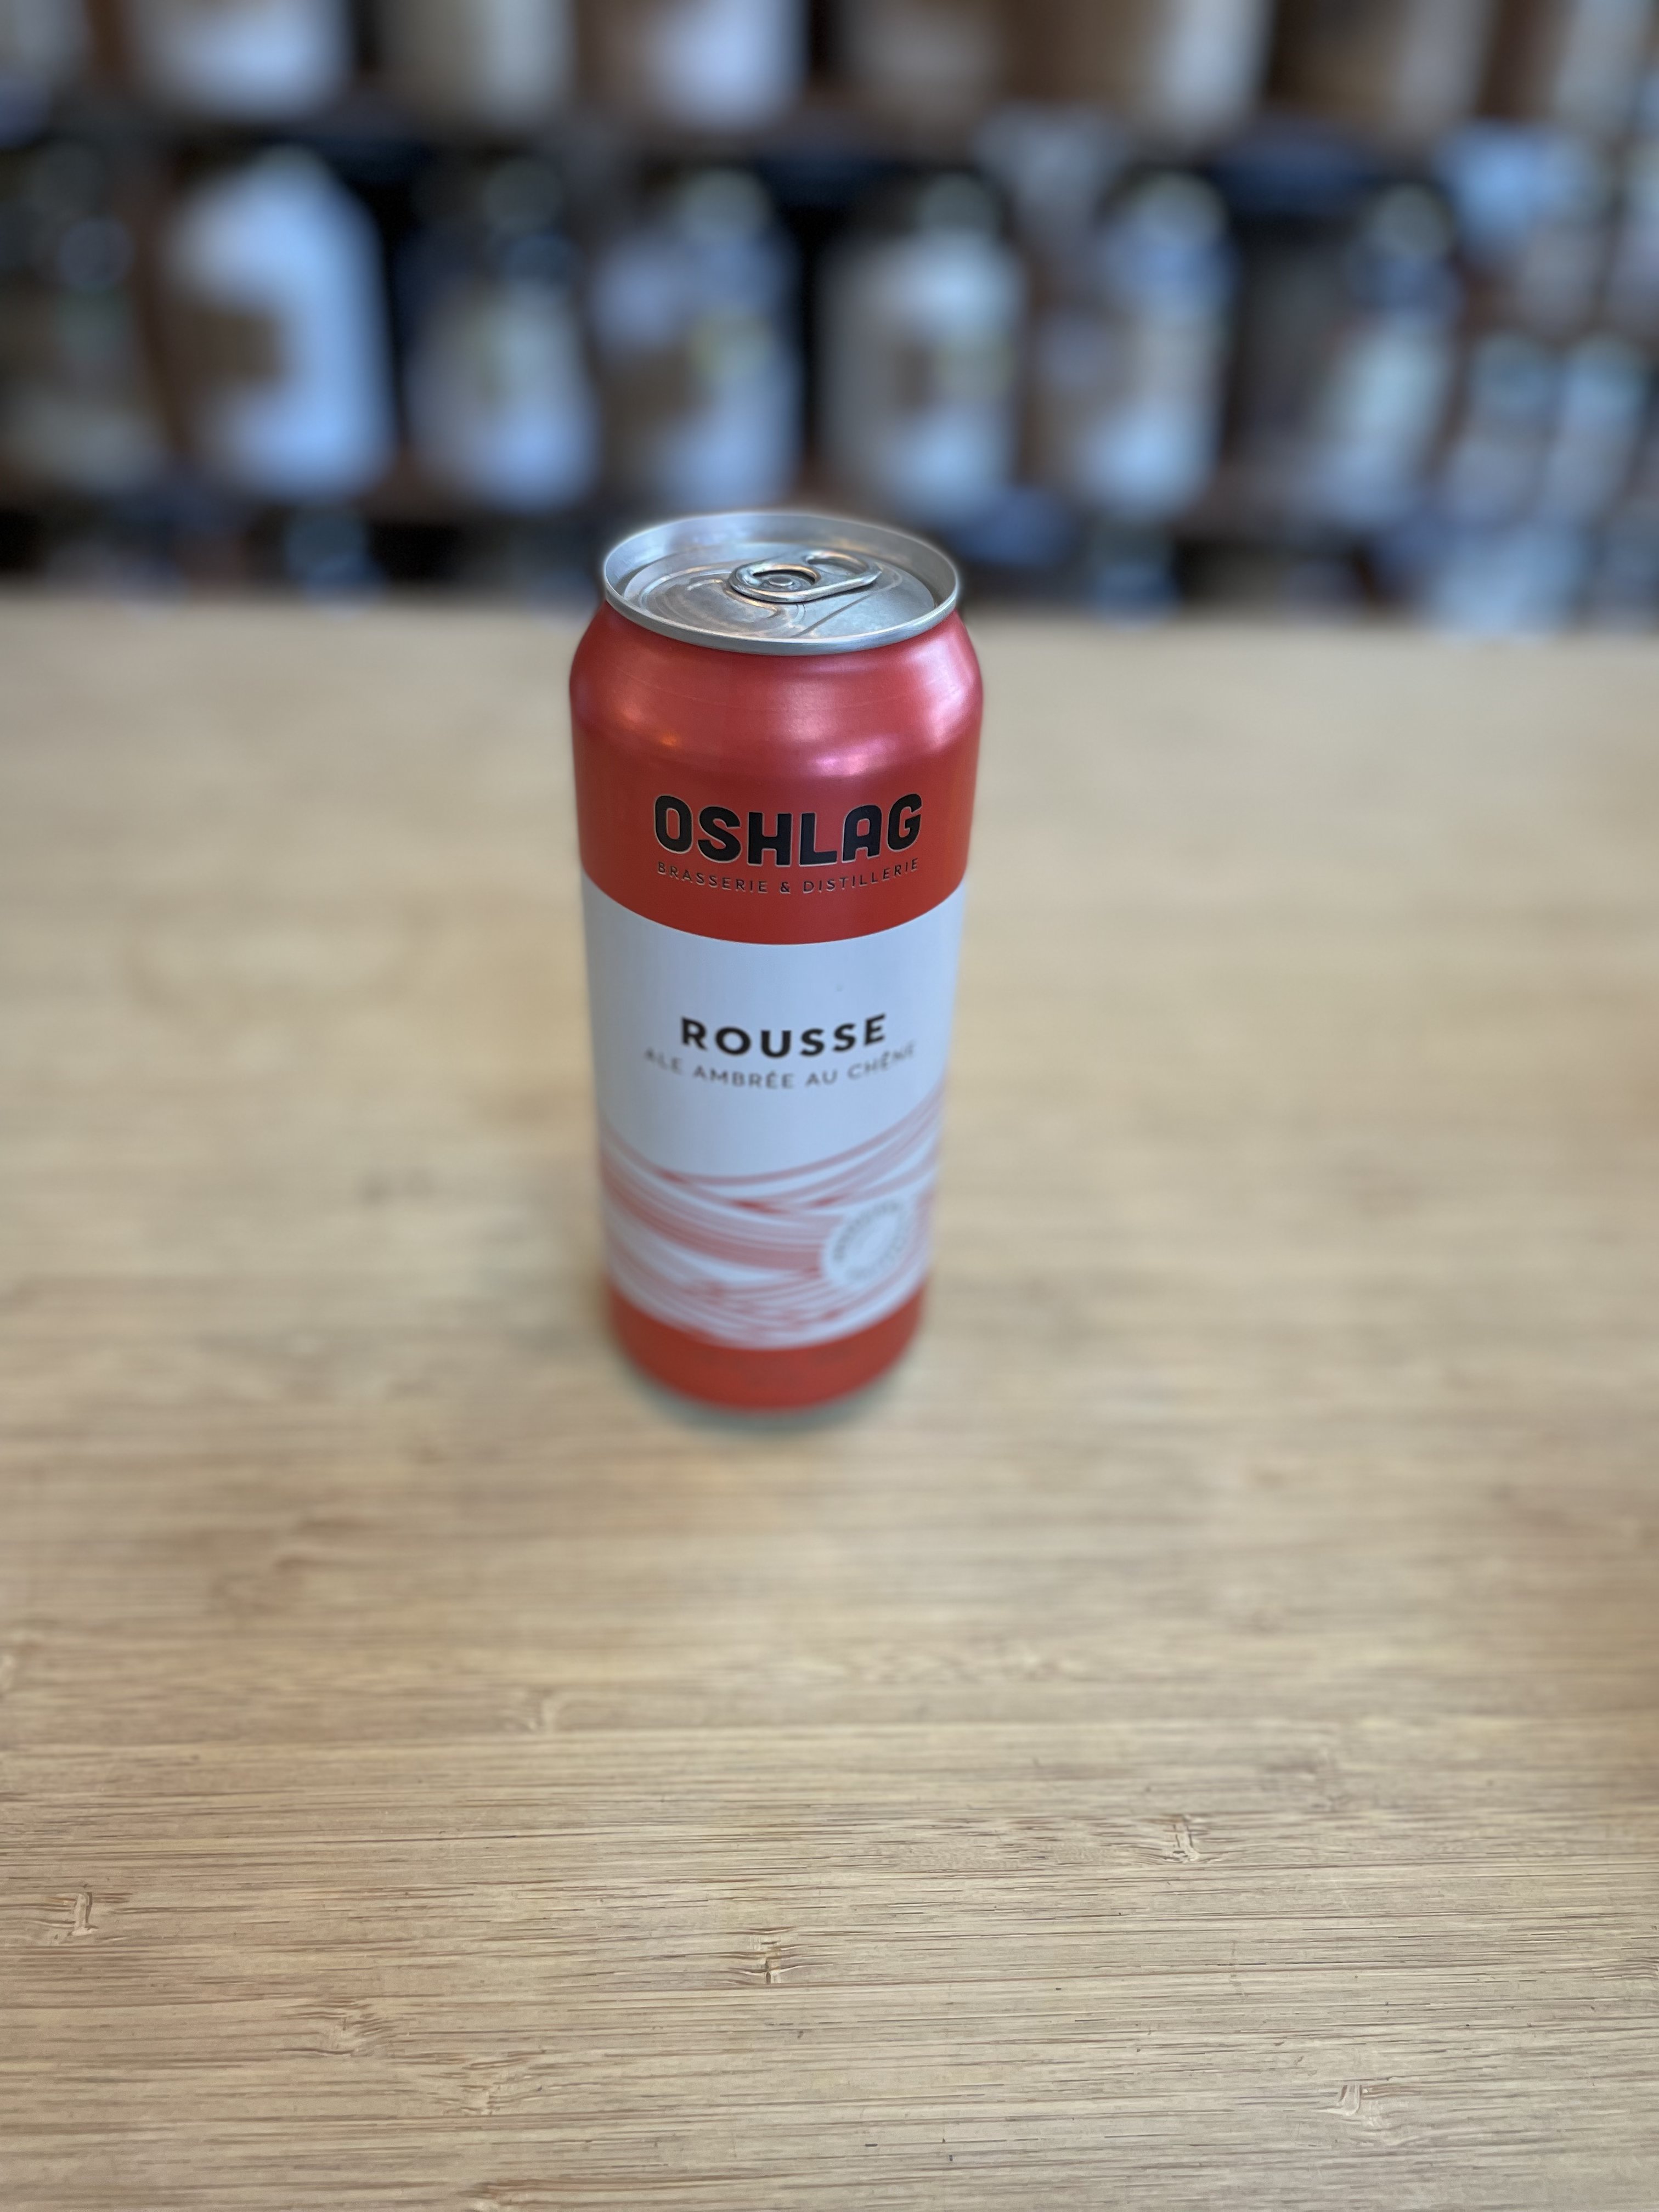 Bière Oshlag - OAK Ambré ALE Rousse